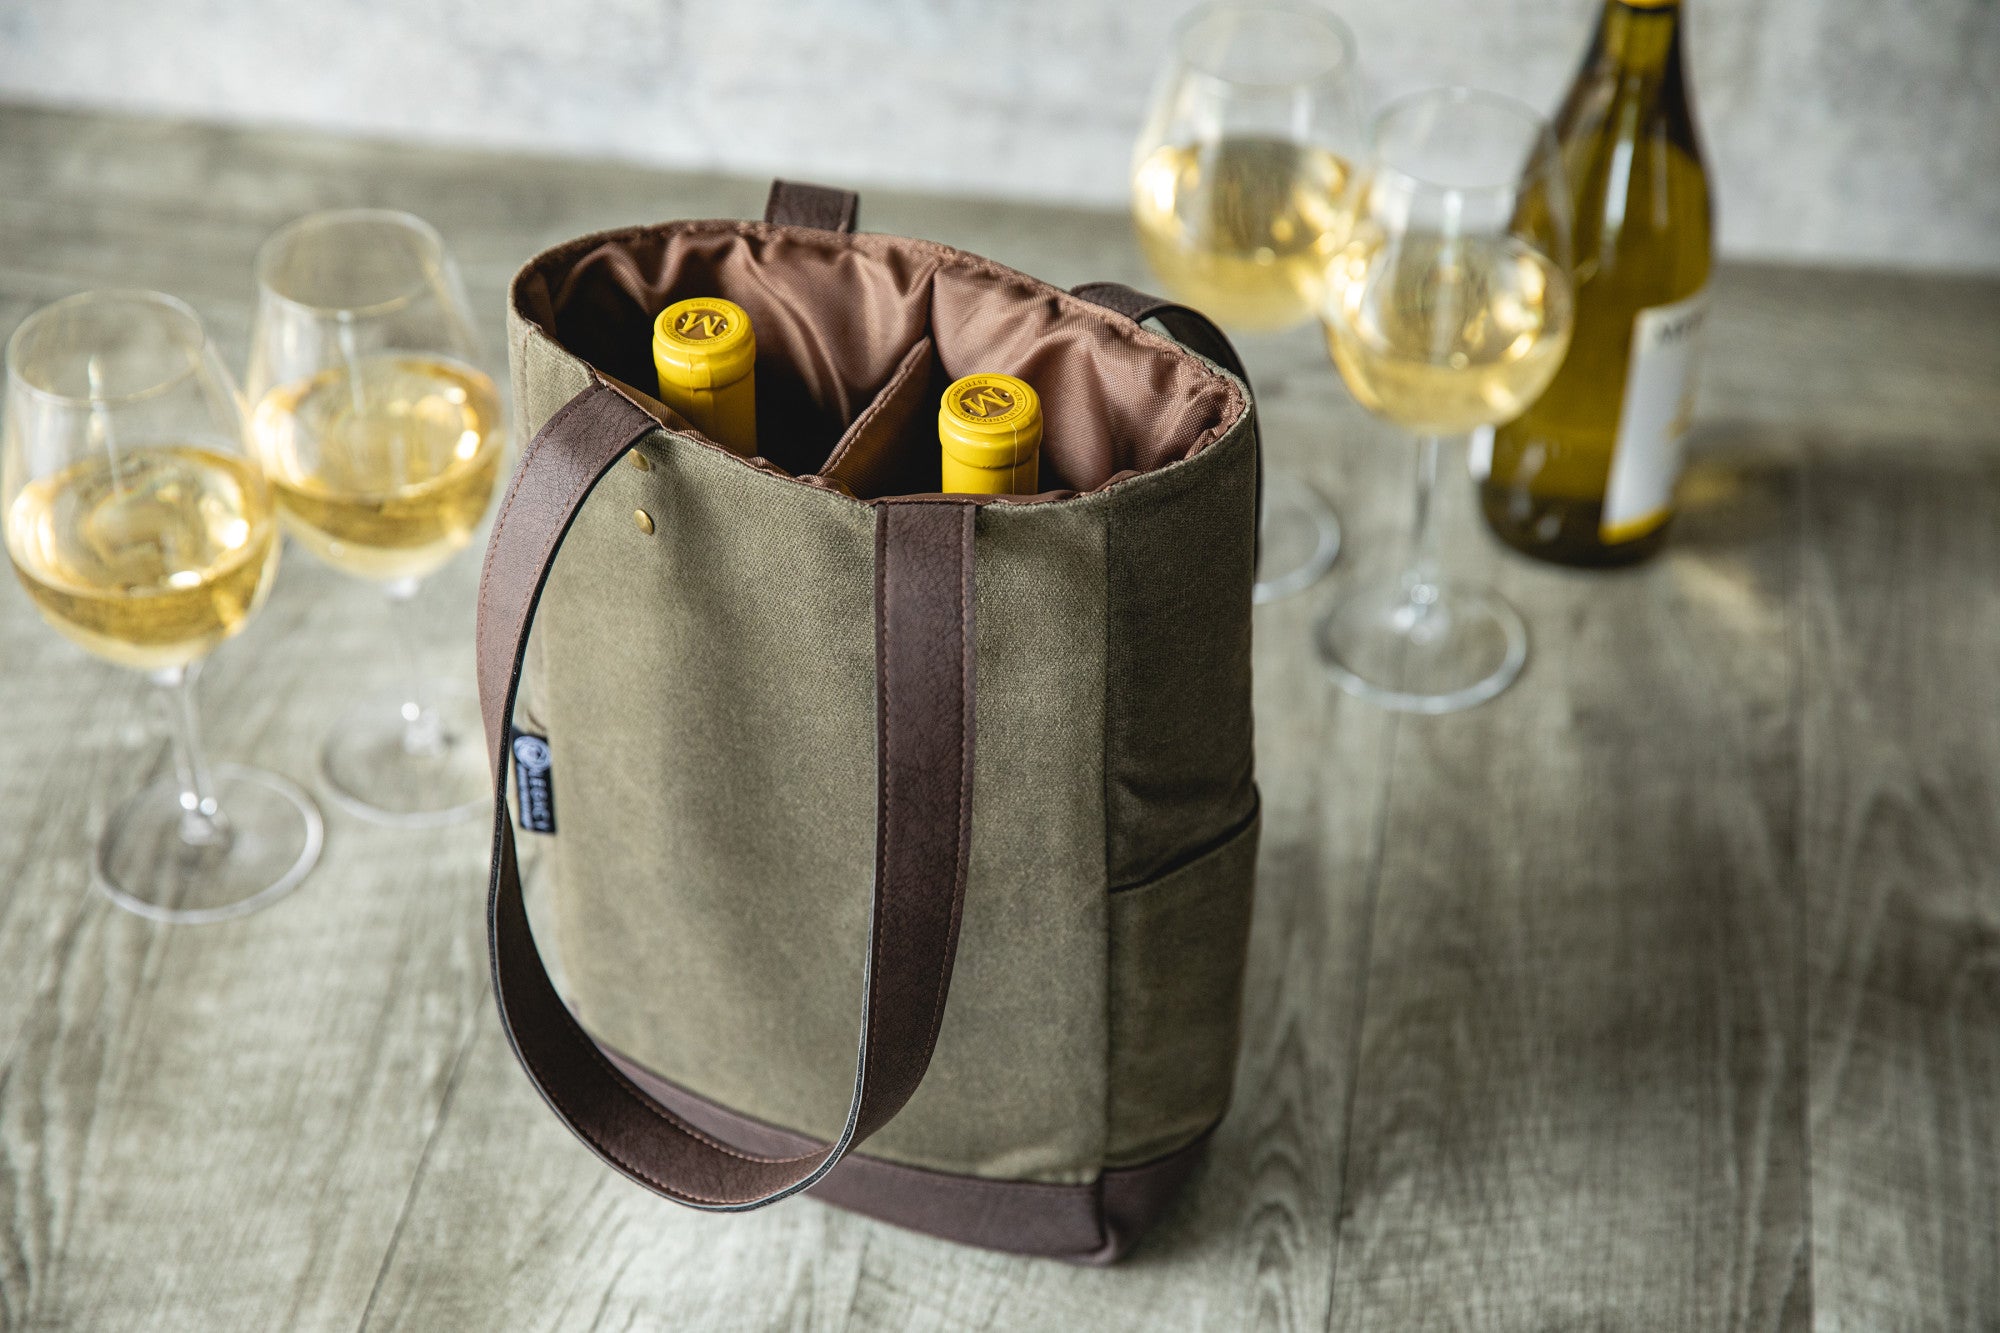 Florida Gators - 2 Bottle Insulated Wine Cooler Bag